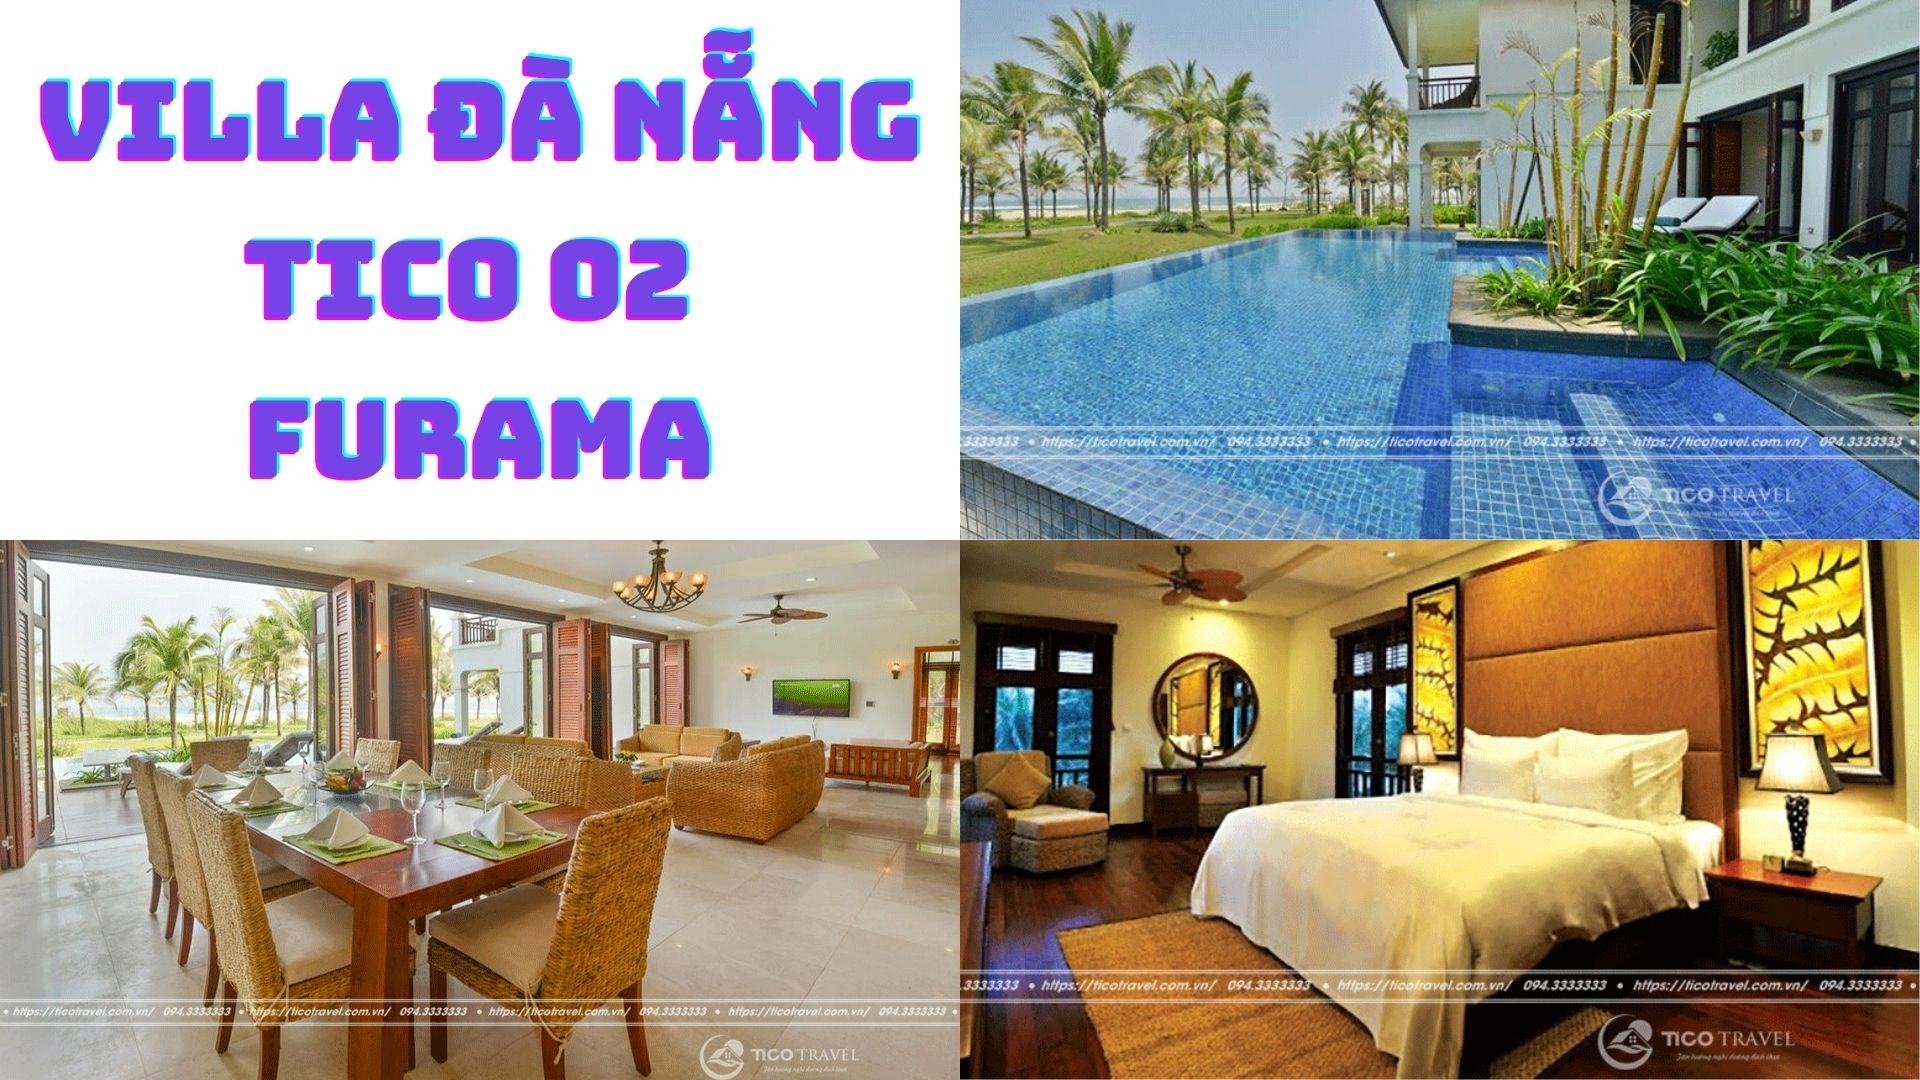 Villa Đà Nẵng Tico 02 - Furama